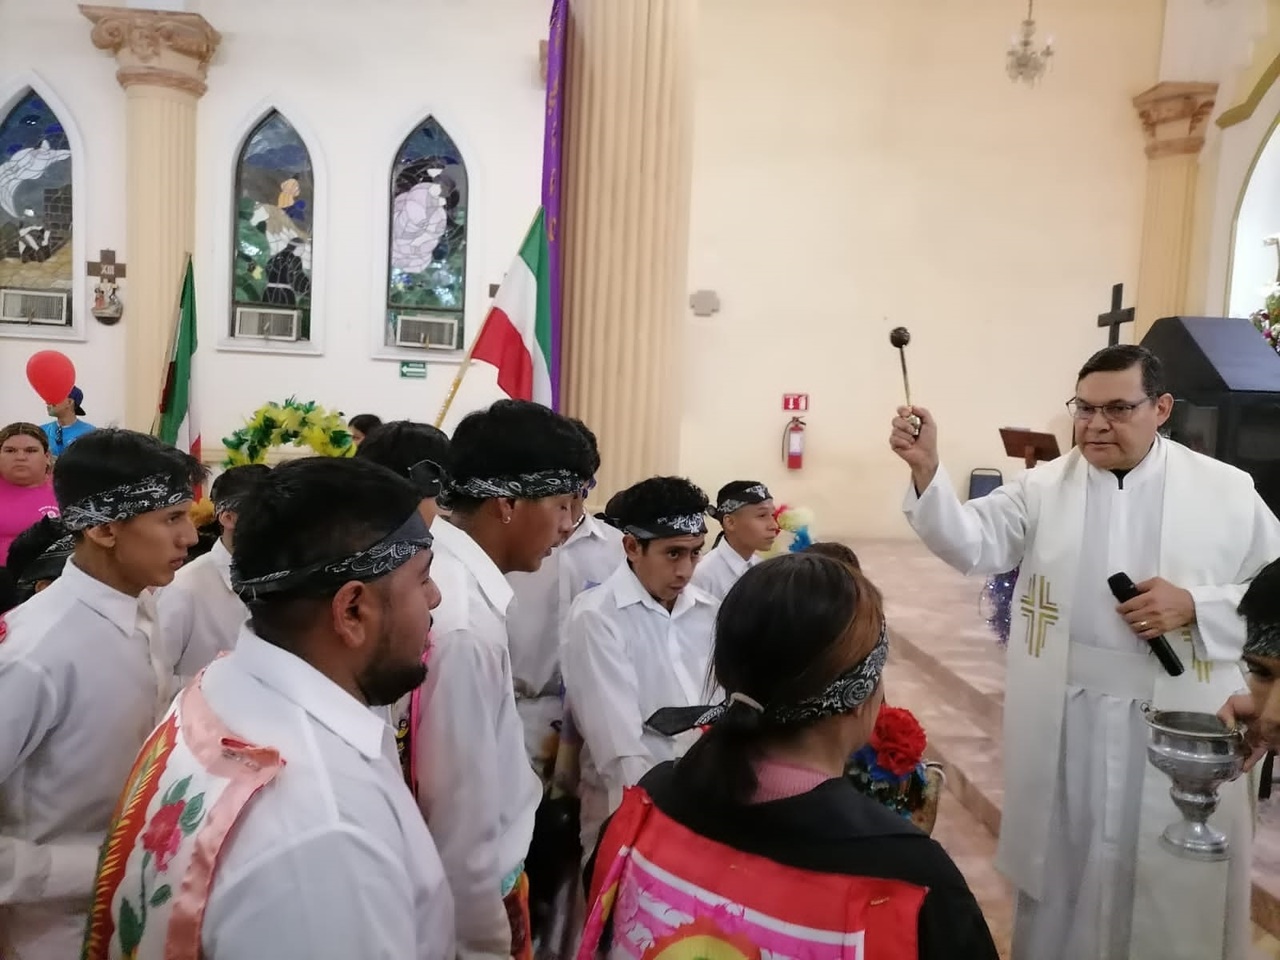 Los grupos de danzantes recibieron la bendición del sacerdote. (EL SIGLO DE TORREÓN)